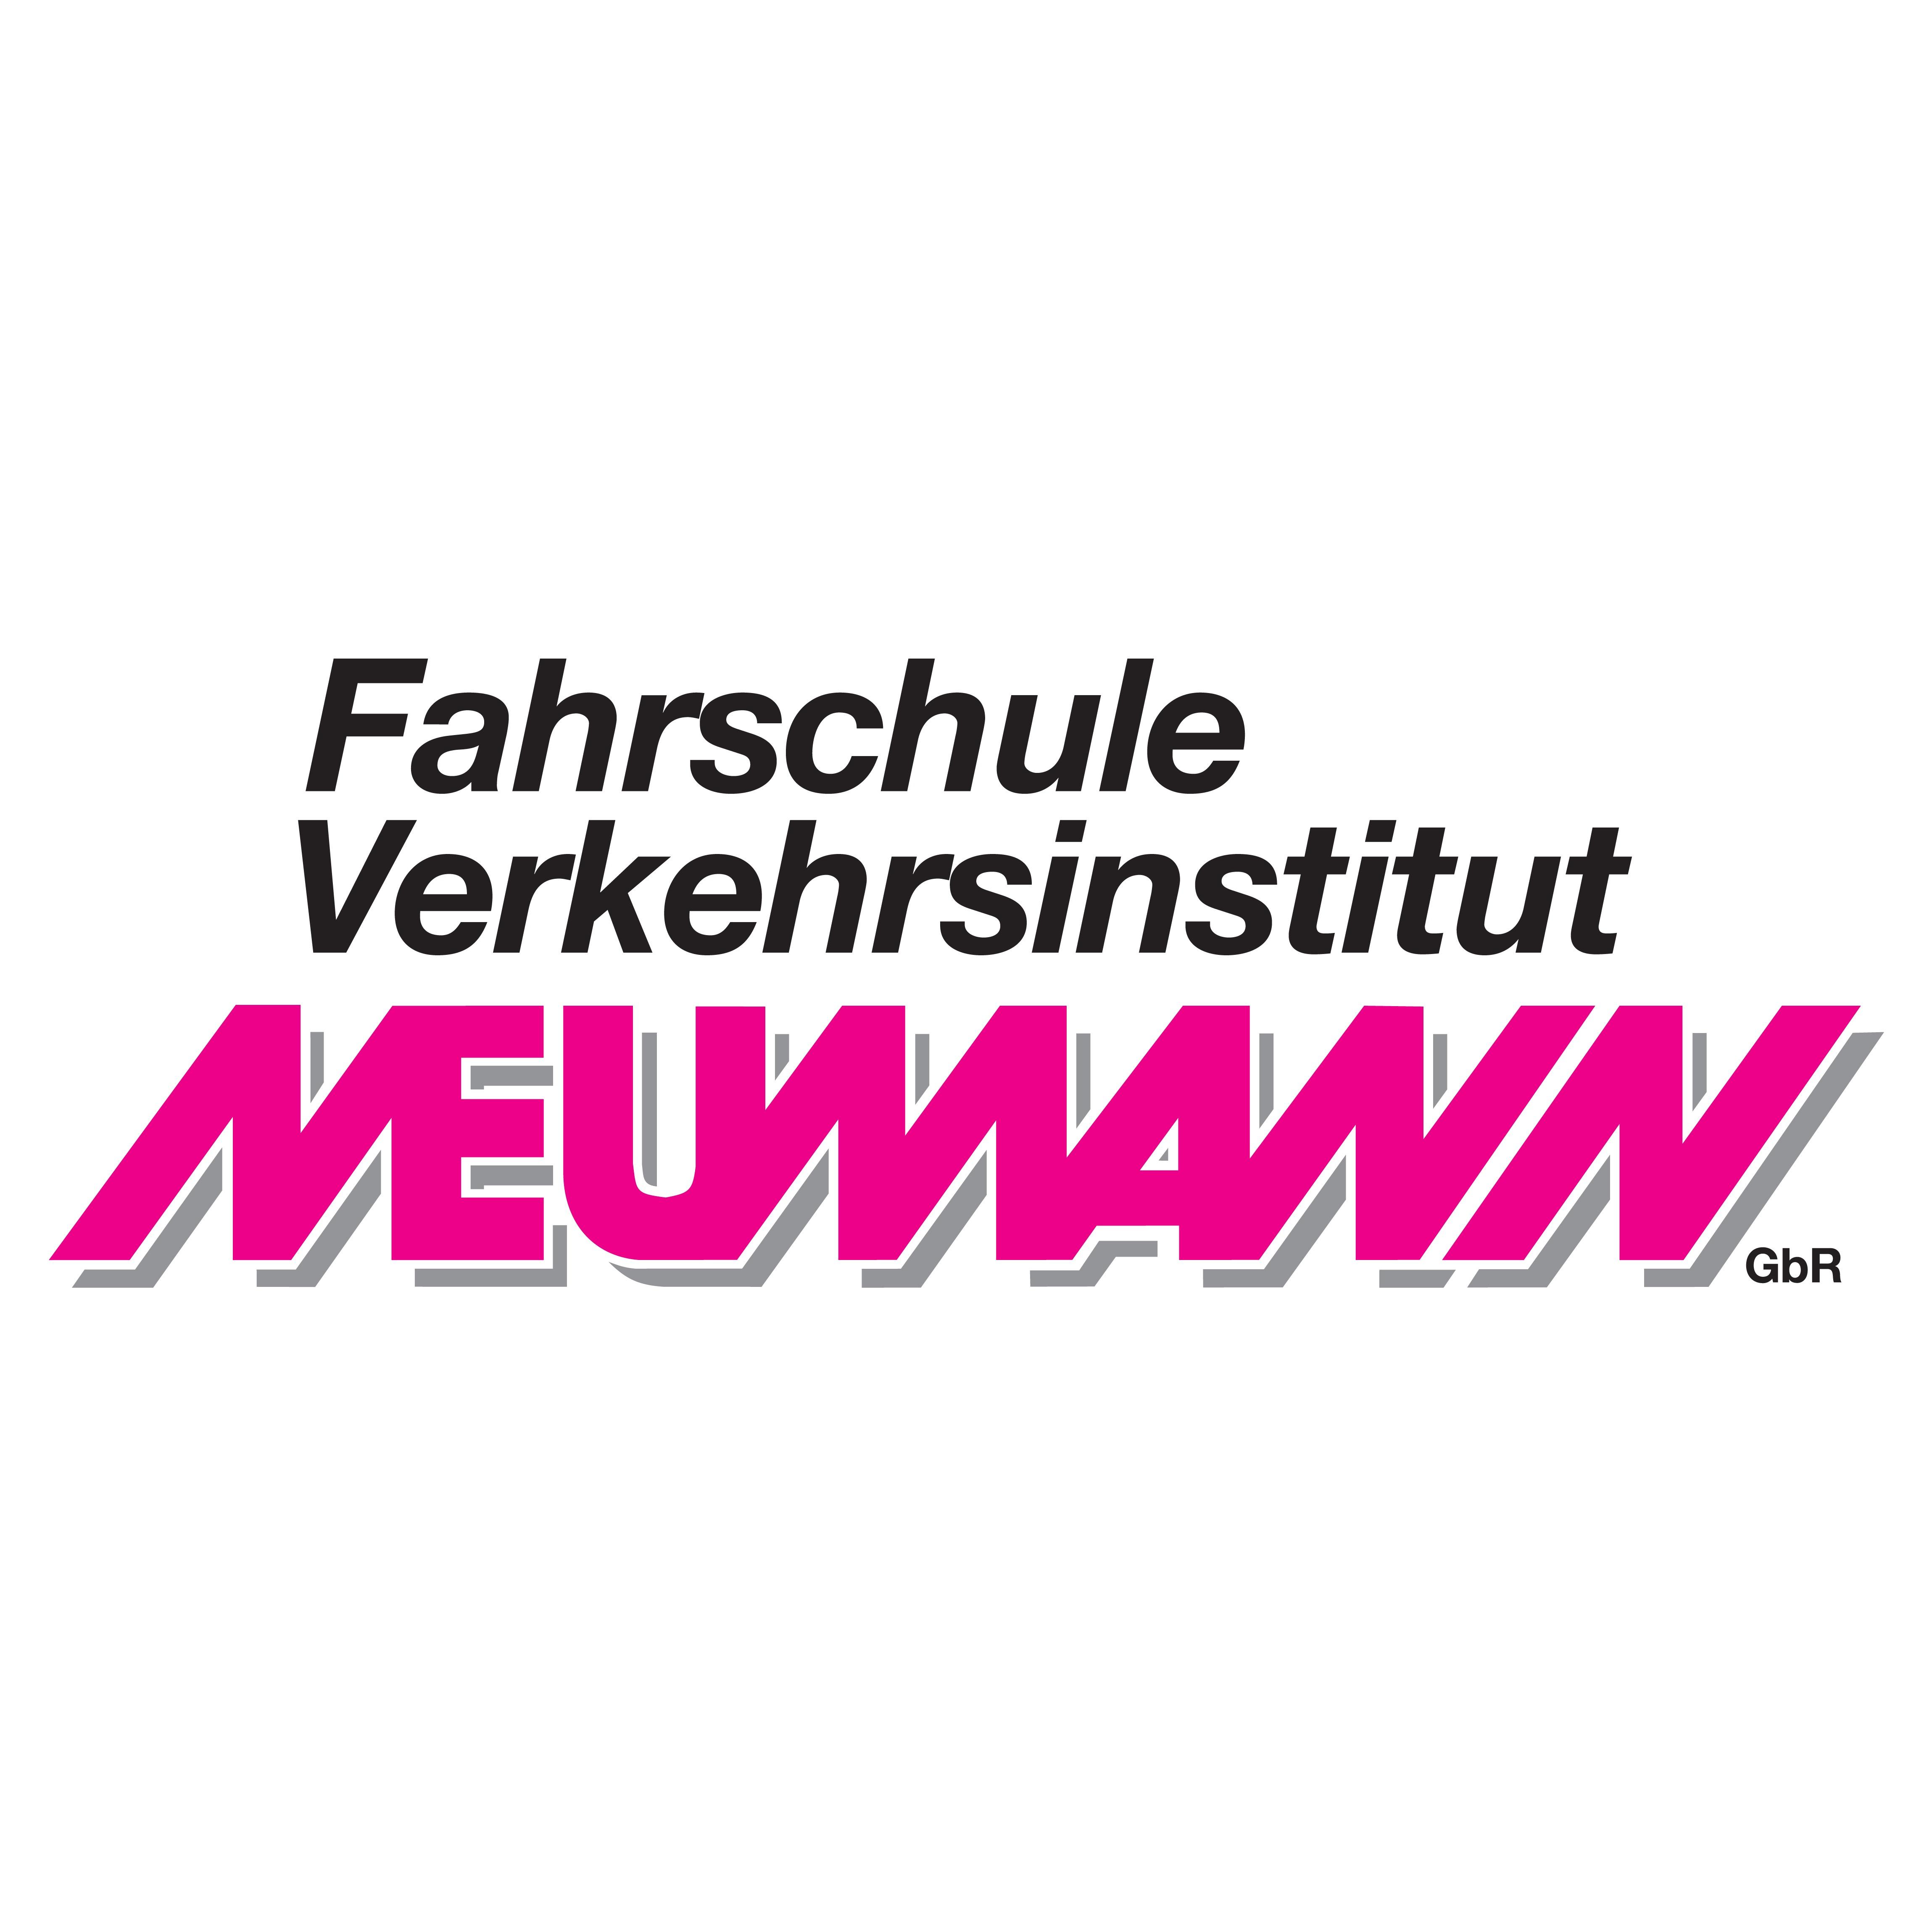 Fahrschule/Verkehrsinstitut Neumann GbR in Holzminden - Logo